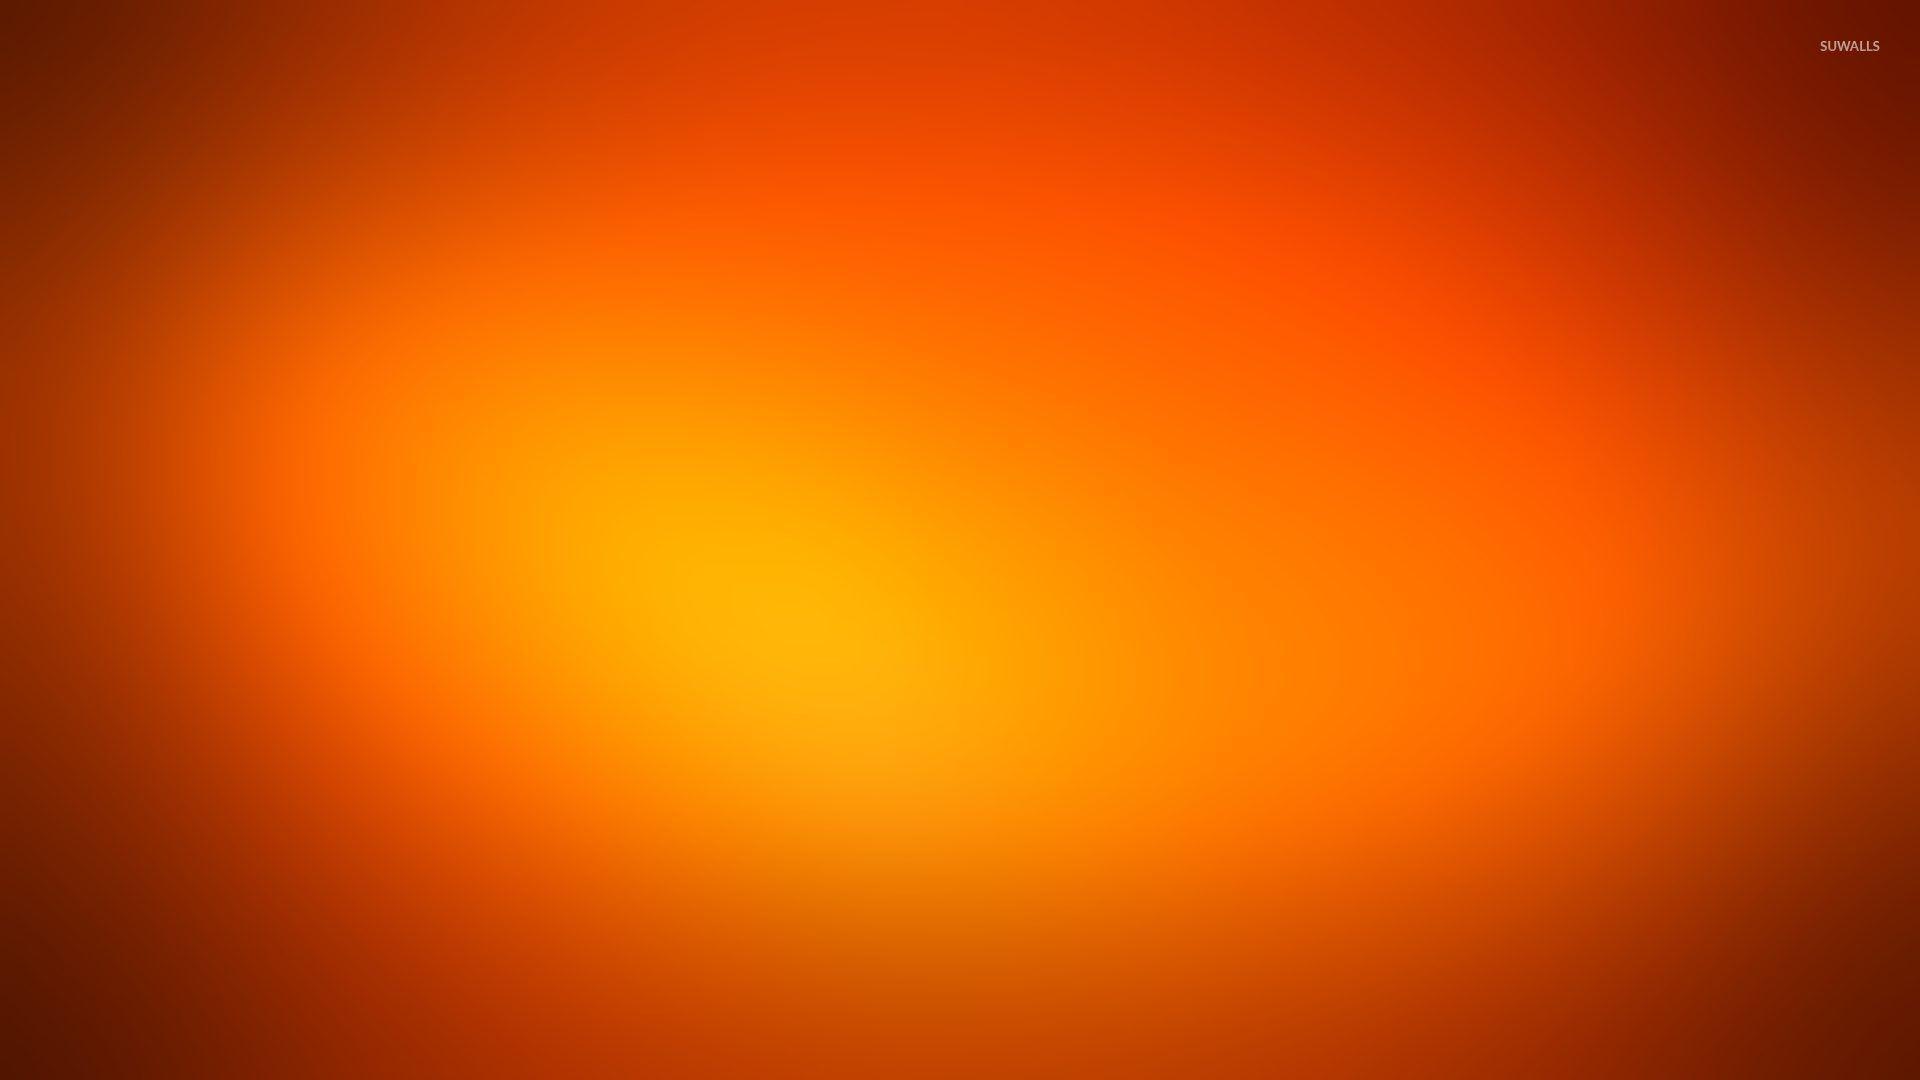 Hình nền màu cam HD với hình ảnh sống động và chất lượng cao sẽ khiến bạn cảm thấy thích thú khi sử dụng điện thoại của mình. Tận hưởng vẻ đẹp tươi sáng và năng động của màu cam với hình nền HD này.